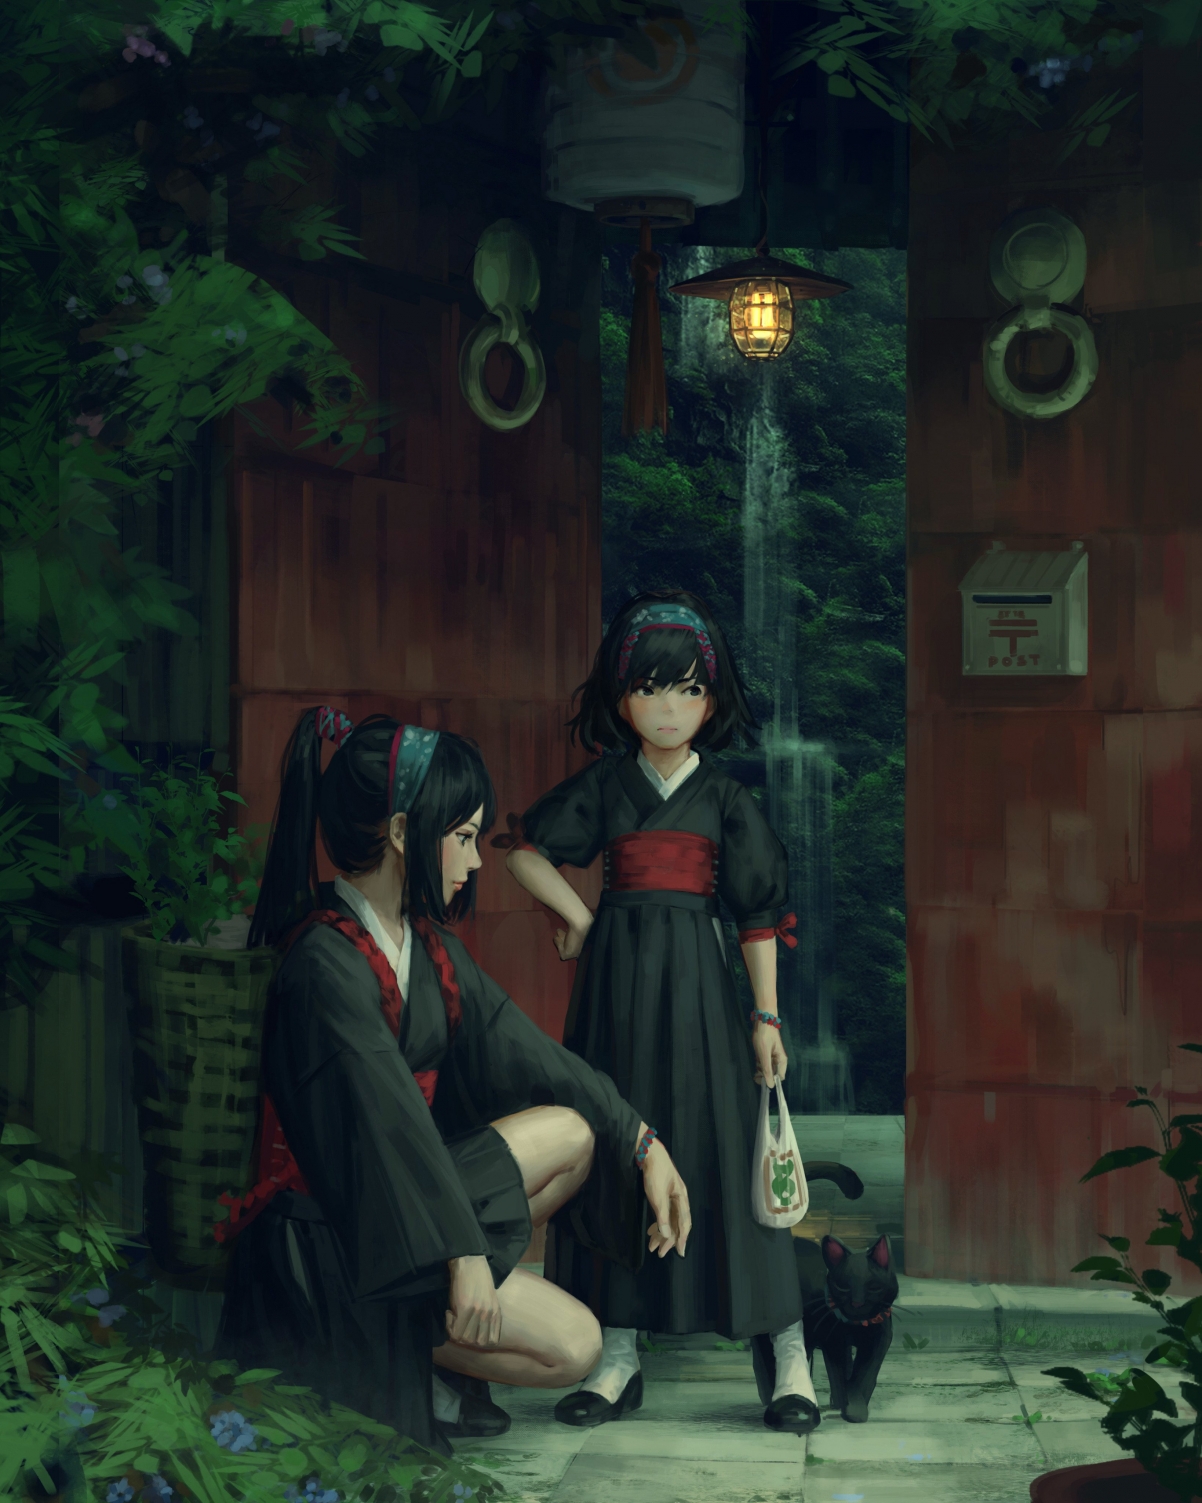 黑眼睛 动漫女孩 日本服装 短发 马尾 庭院 瀑布 4k动漫手机壁纸